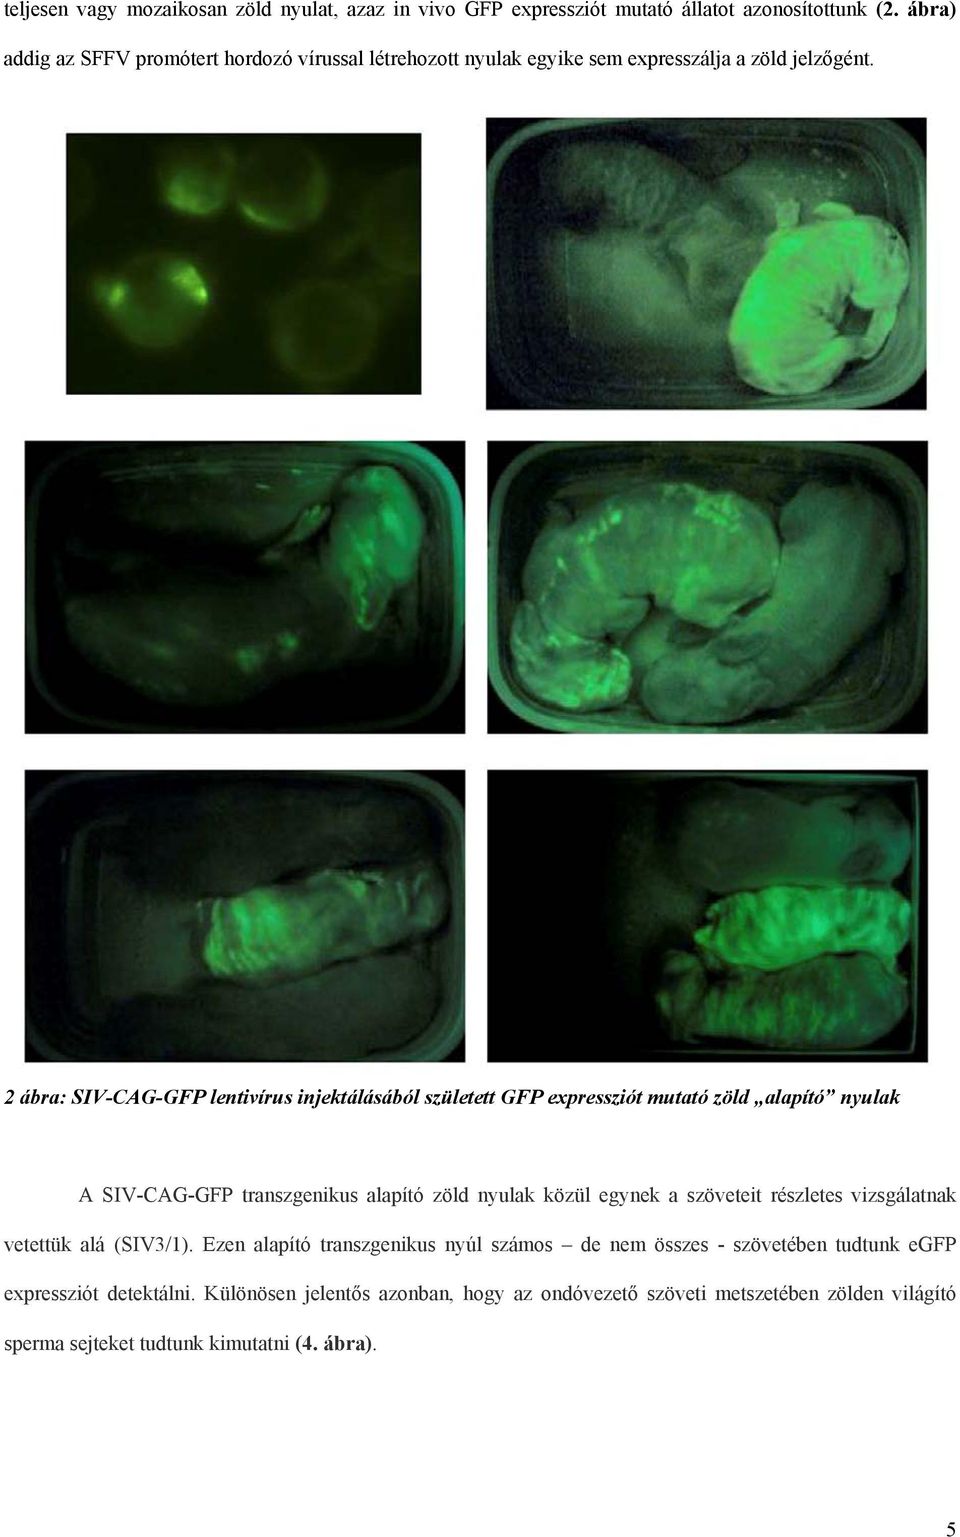 2 ábra: SIV-CAG-GFP lentivírus injektálásából született GFP expressziót mutató zöld alapító nyulak A SIV-CAG-GFP transzgenikus alapító zöld nyulak közül egynek a